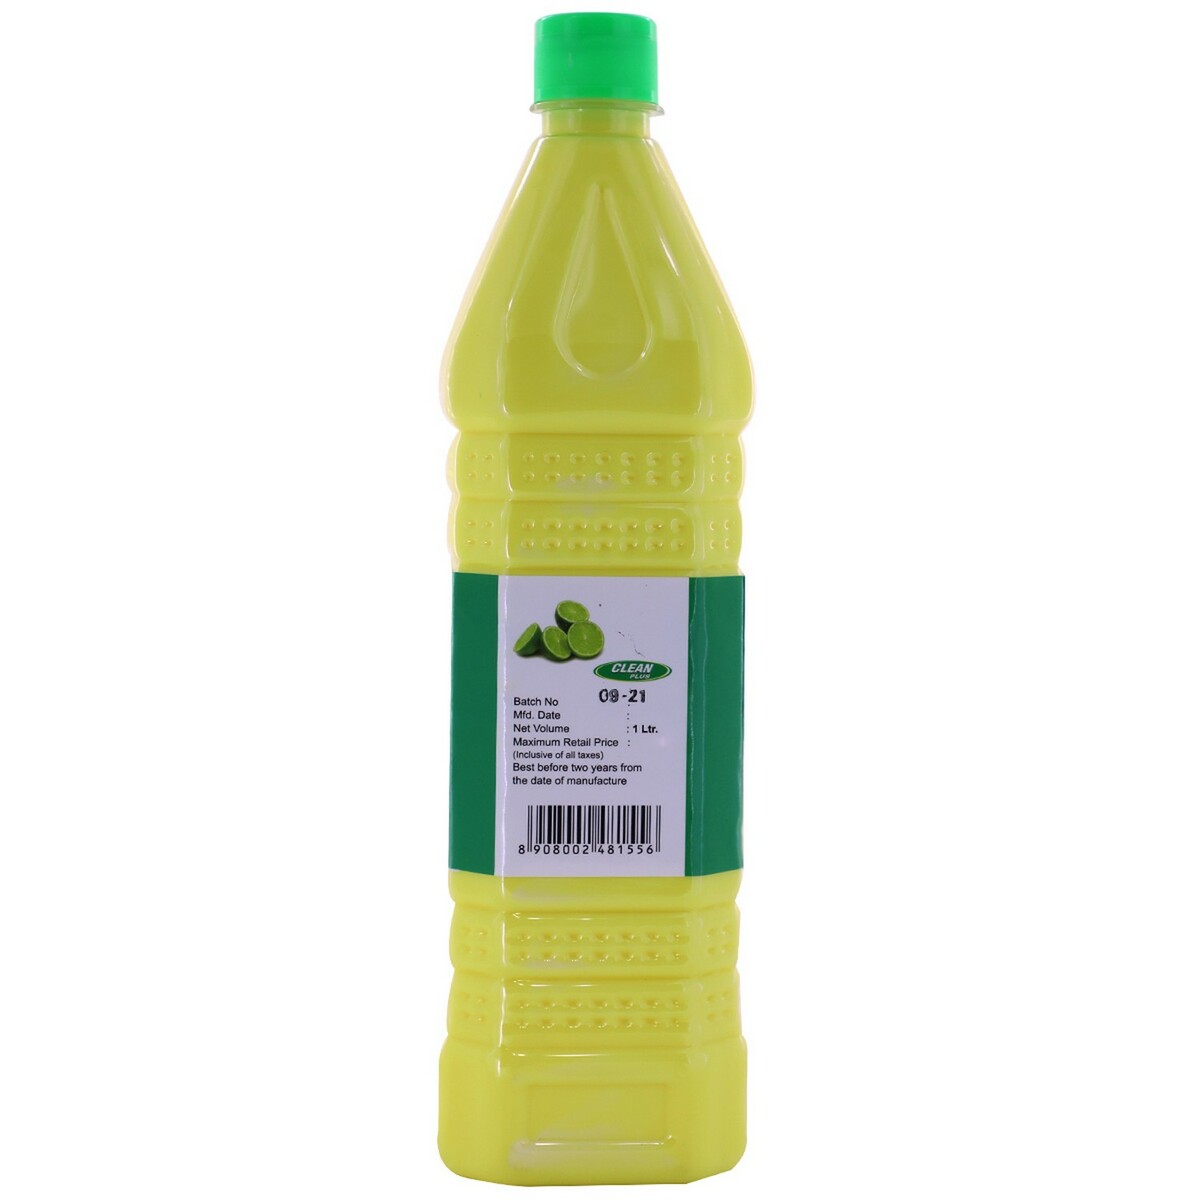 Clean Plus Cleaning Liquid Lemon 1Litre